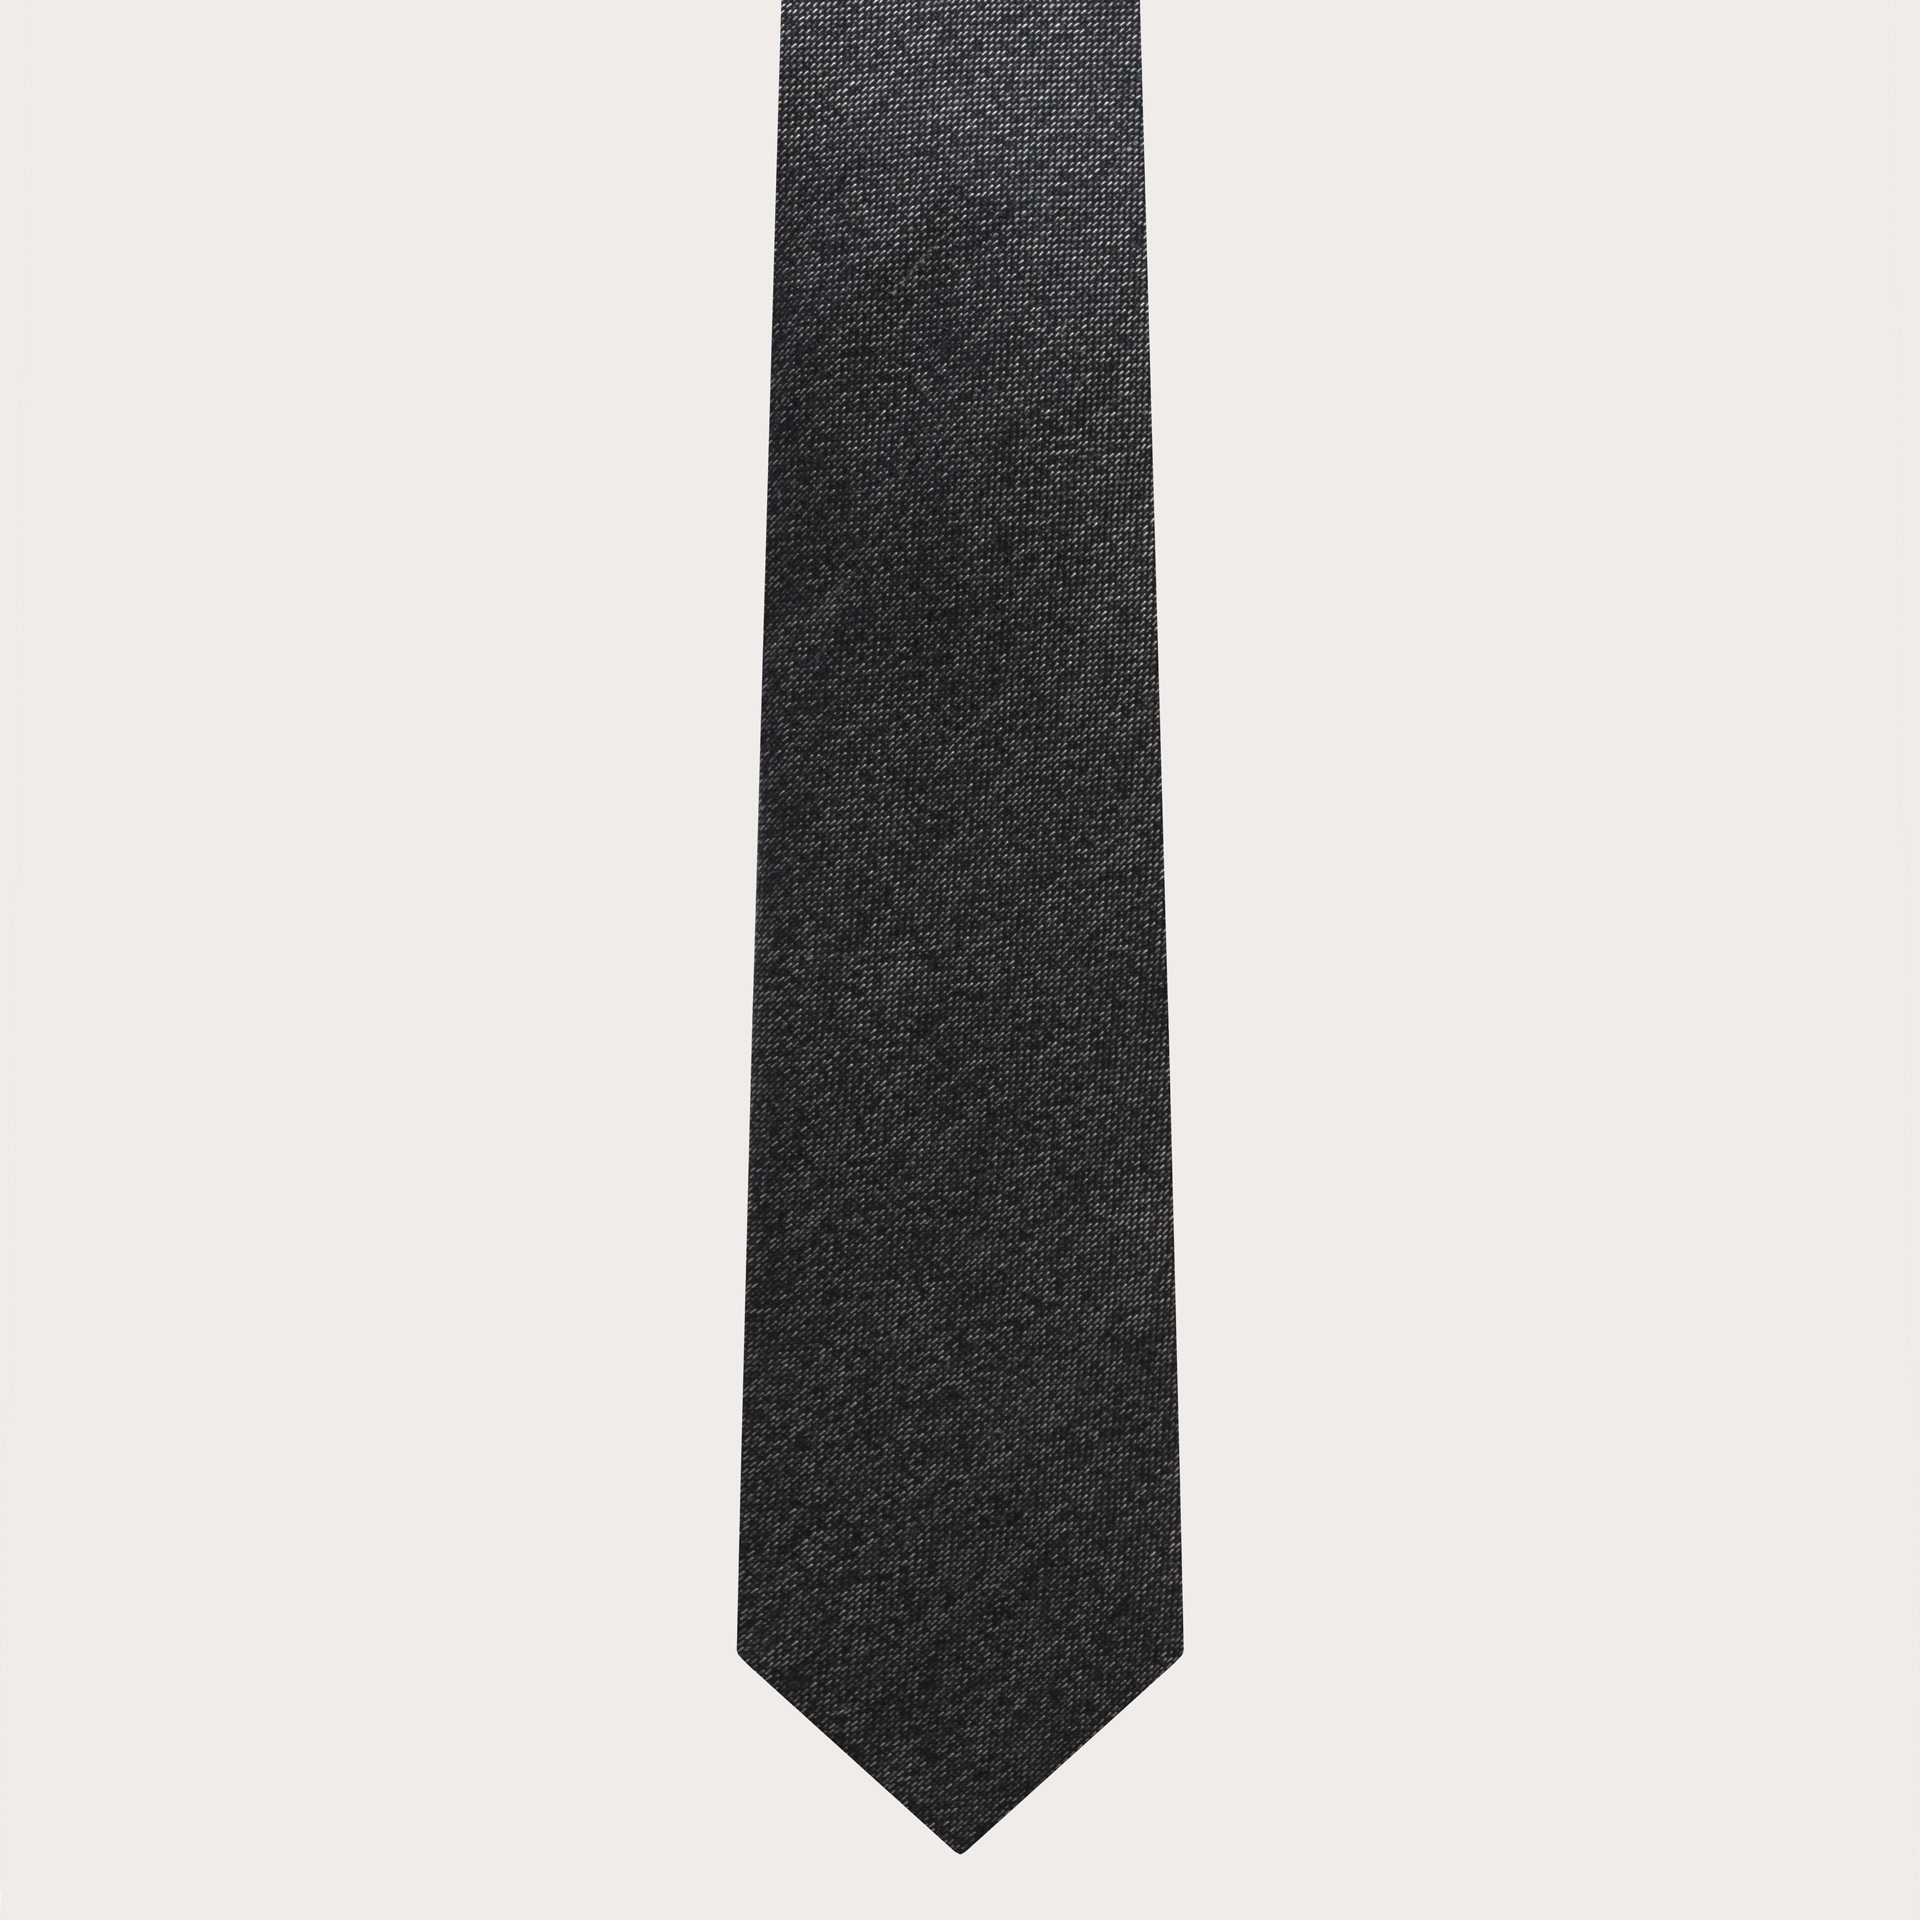 BRUCLE Cravatta uomo sottile in seta jacquard melange grigio scuro